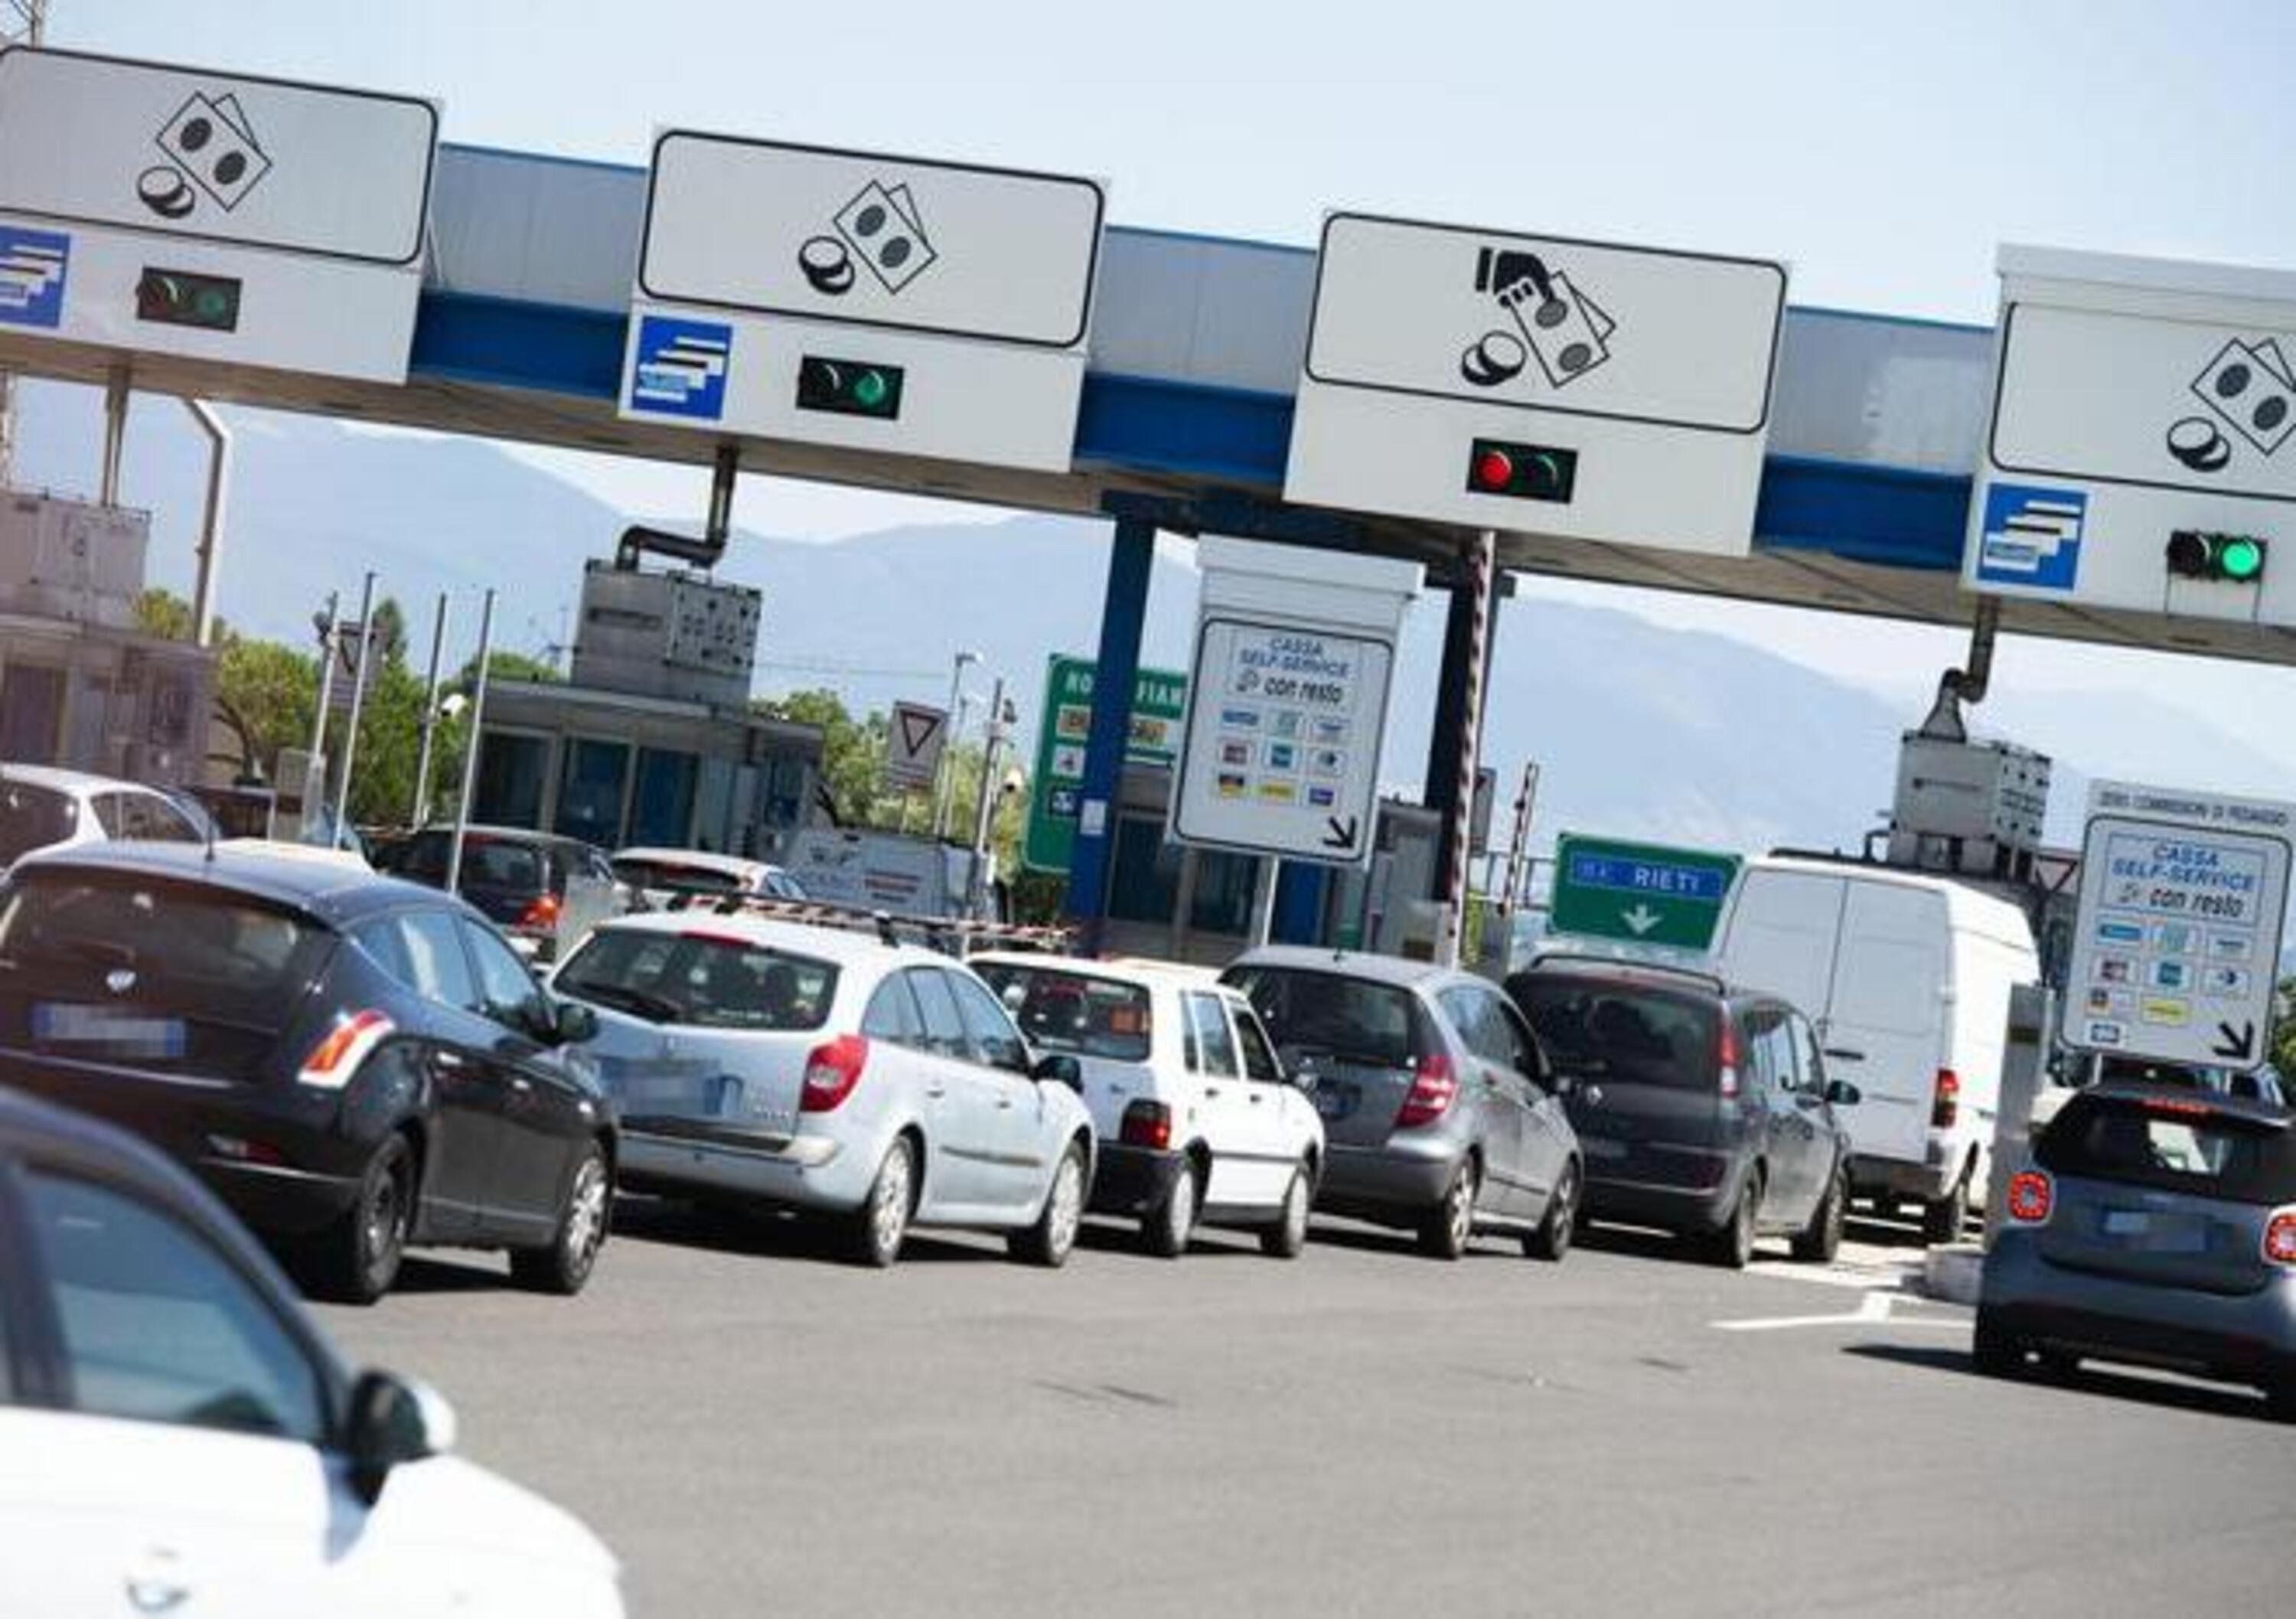 Autostrade in Spagna, un esempio da seguire